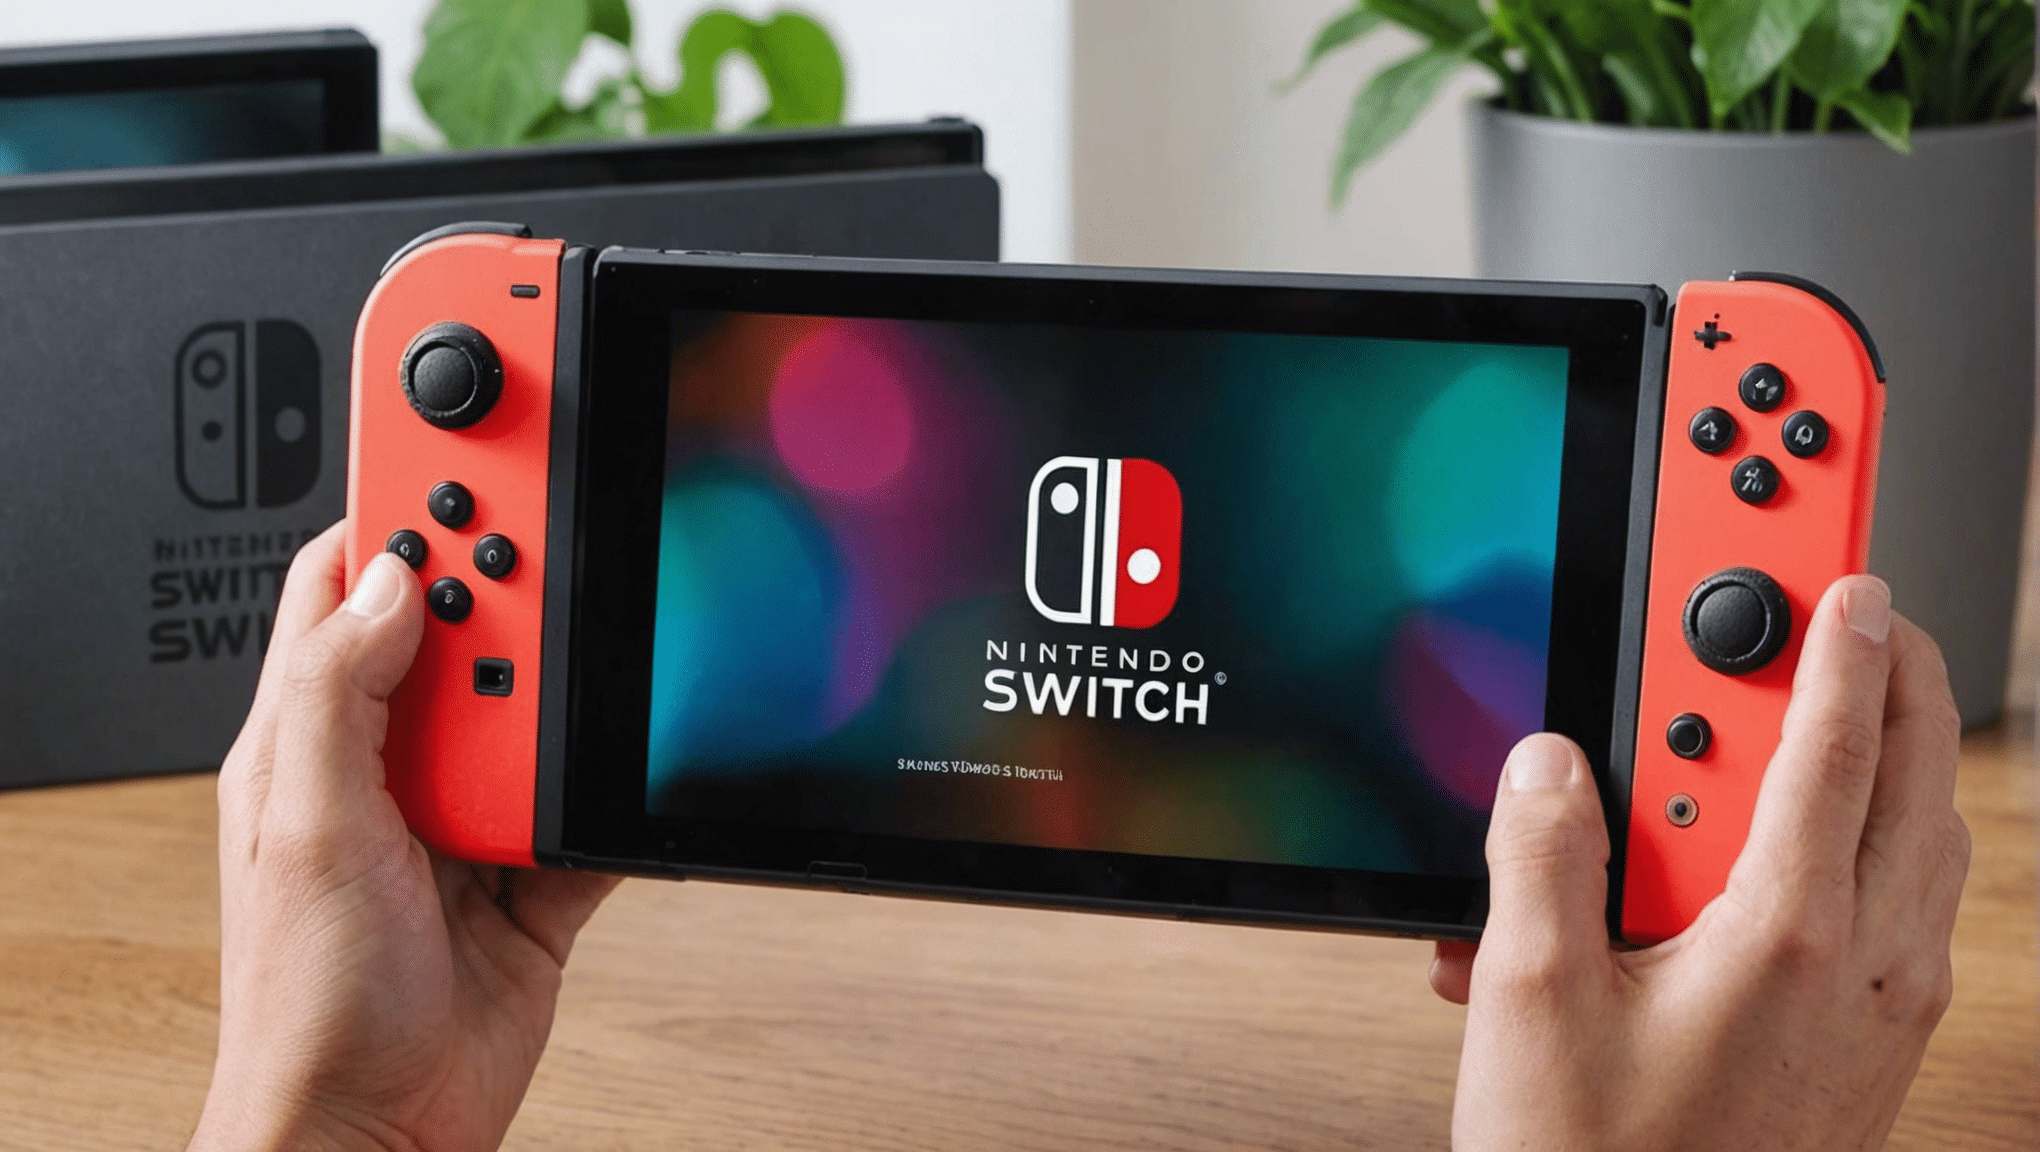 ¡Descubre si Nintendo Switch finalmente ha resuelto su gran defecto! Encuentra la respuesta aquí y ahora.